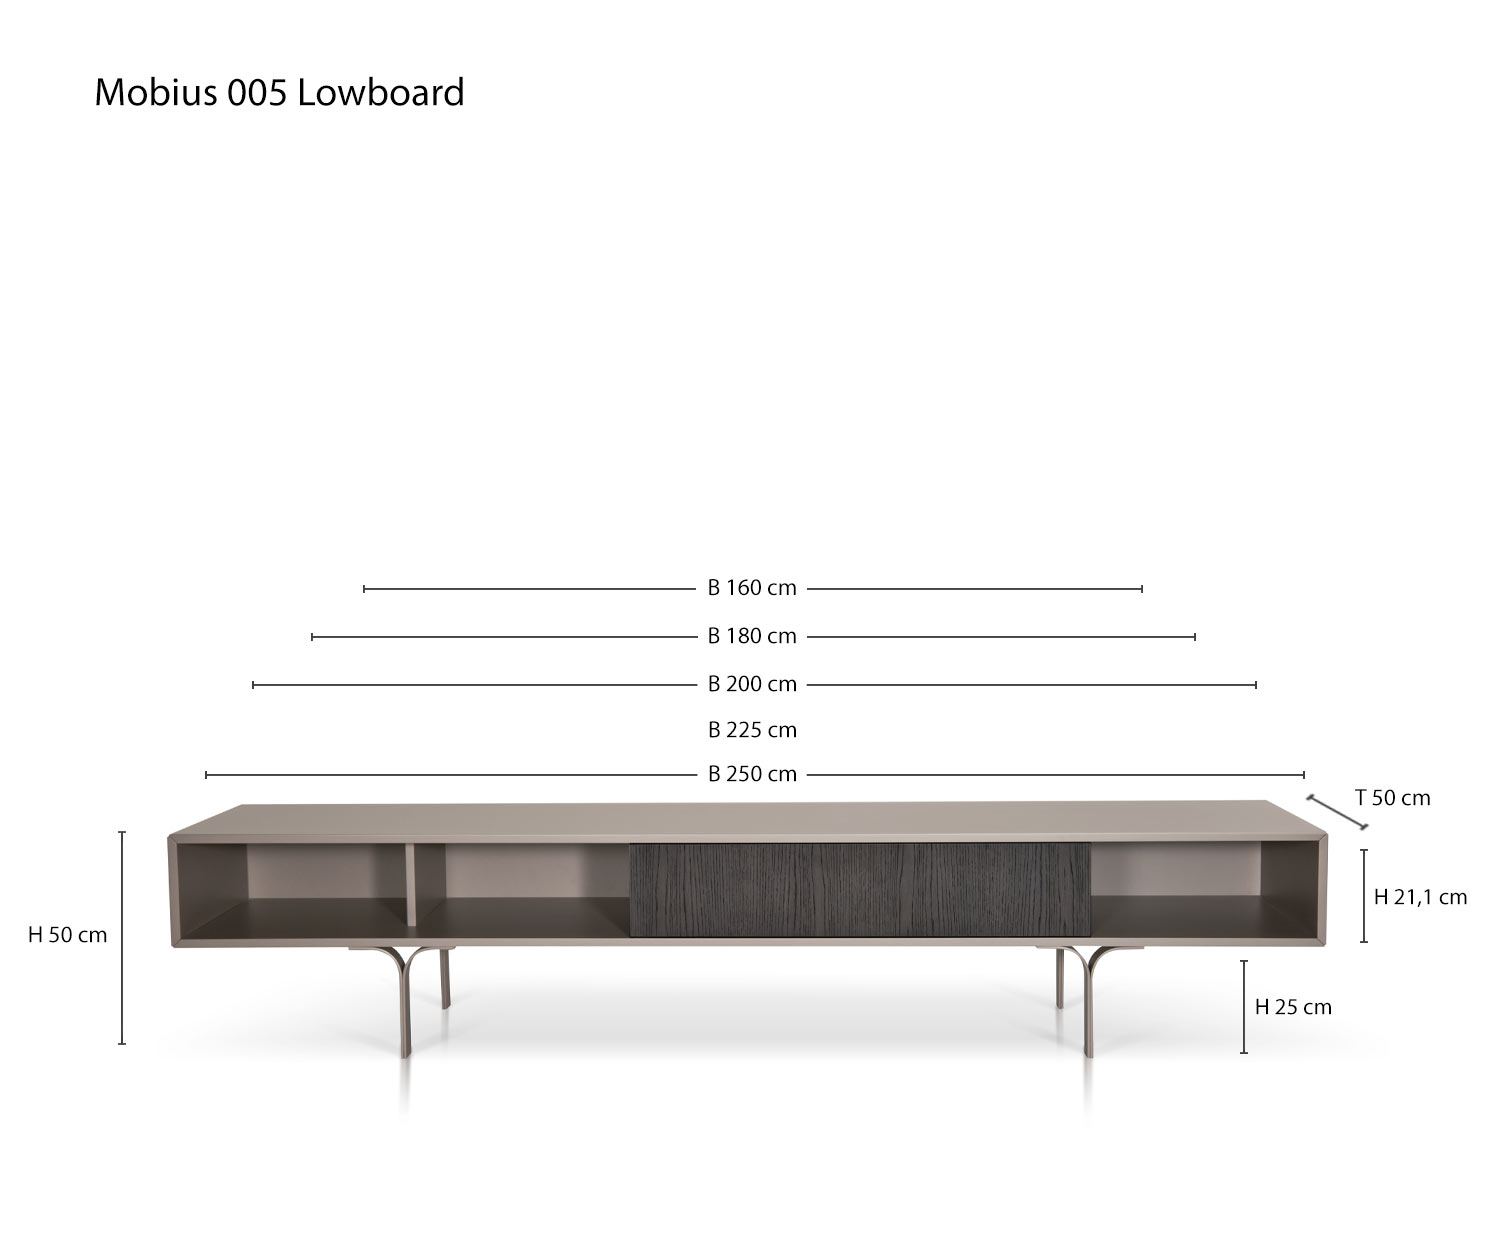 Designer Wohnzimmer Design Lowboard Mobius 005 von al2 Skizze Maße Größen Größenangaben